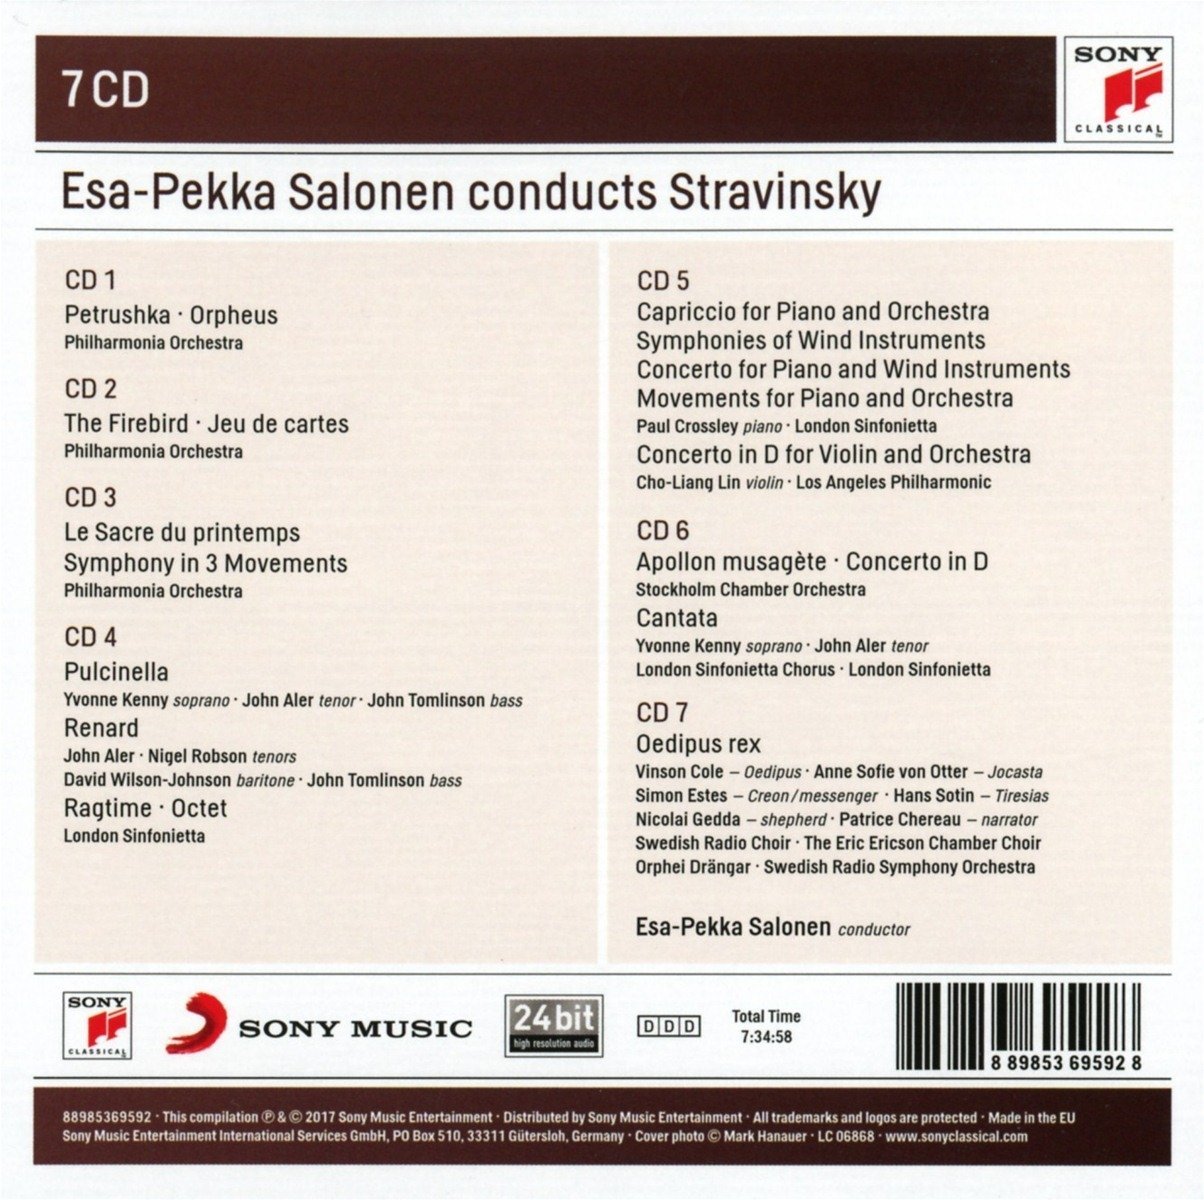 Esa-Pekka Salonen Conducts Stravinsky - Box set | Esa-Pekka Salonen